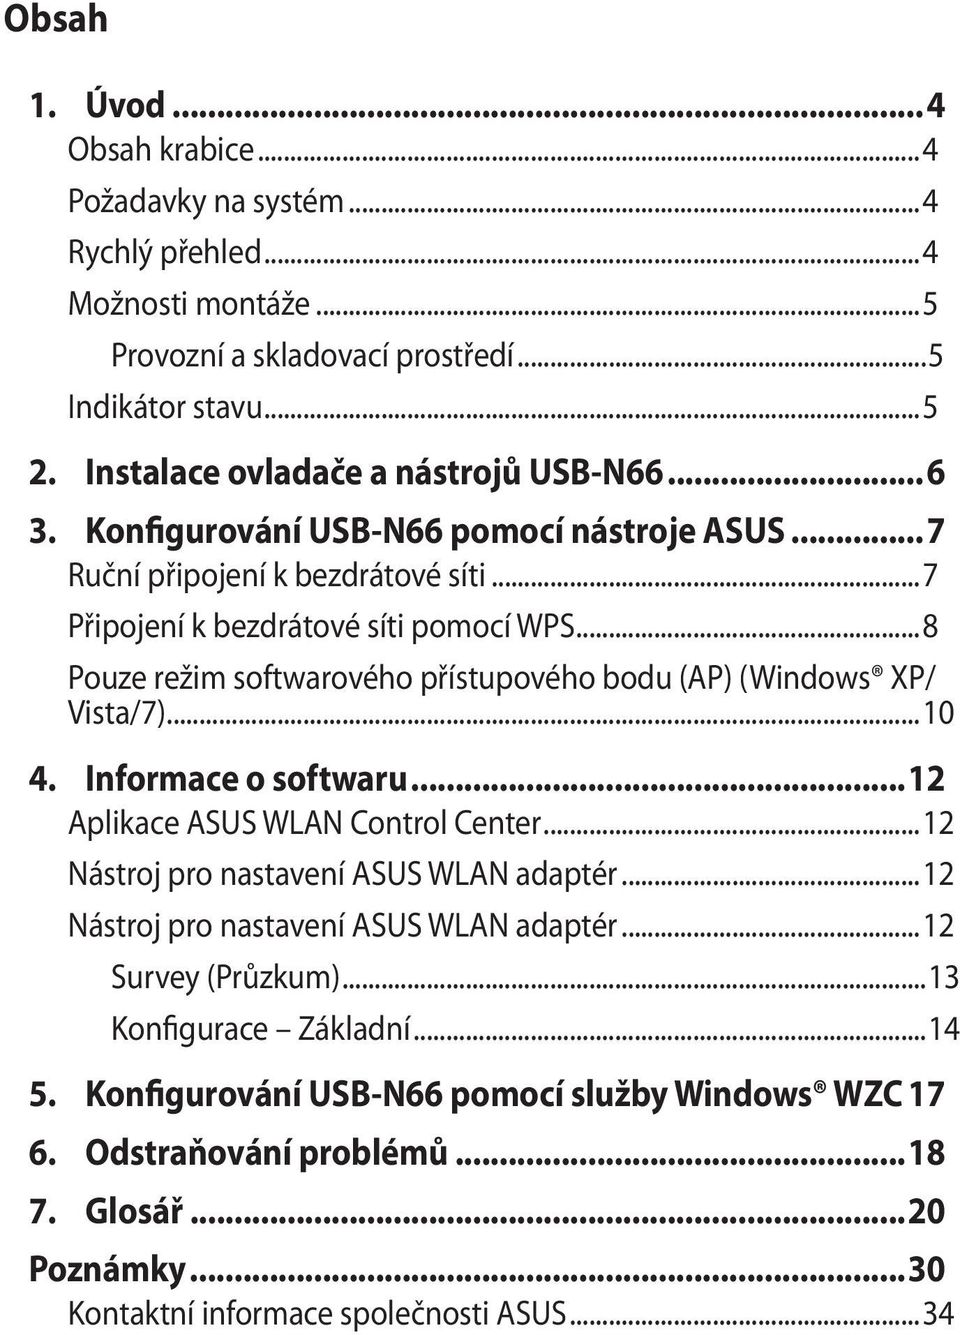 ..8 Pouze režim softwarového přístupového bodu (AP) (Windows XP/ Vista/7)...10 4. Informace o softwaru...12 Aplikace ASUS WLAN Control Center...12 Nástroj pro nastavení ASUS WLAN adaptér.